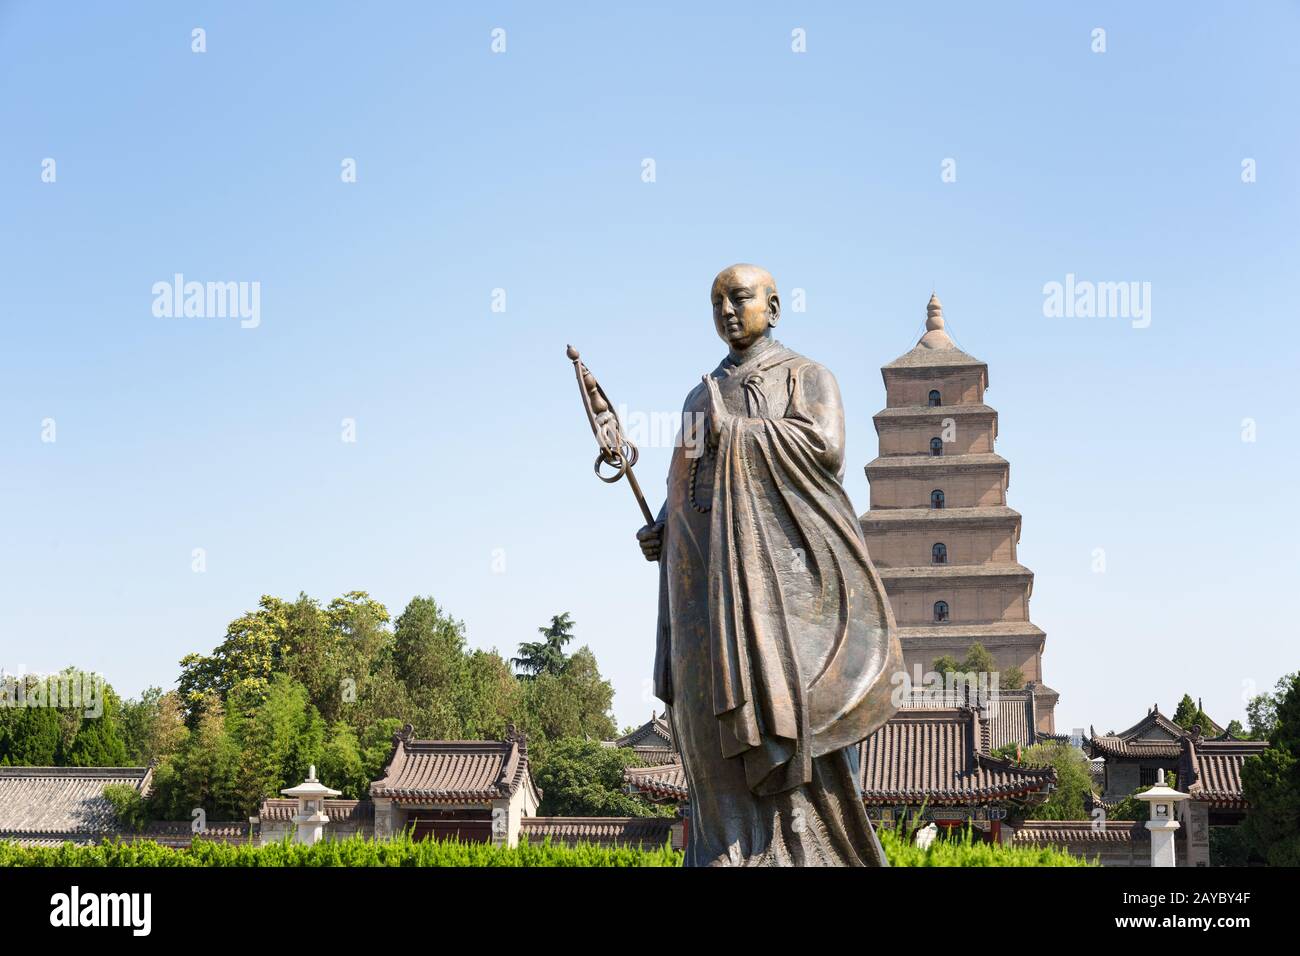 monk xuanzang statue in xian Stock Photo